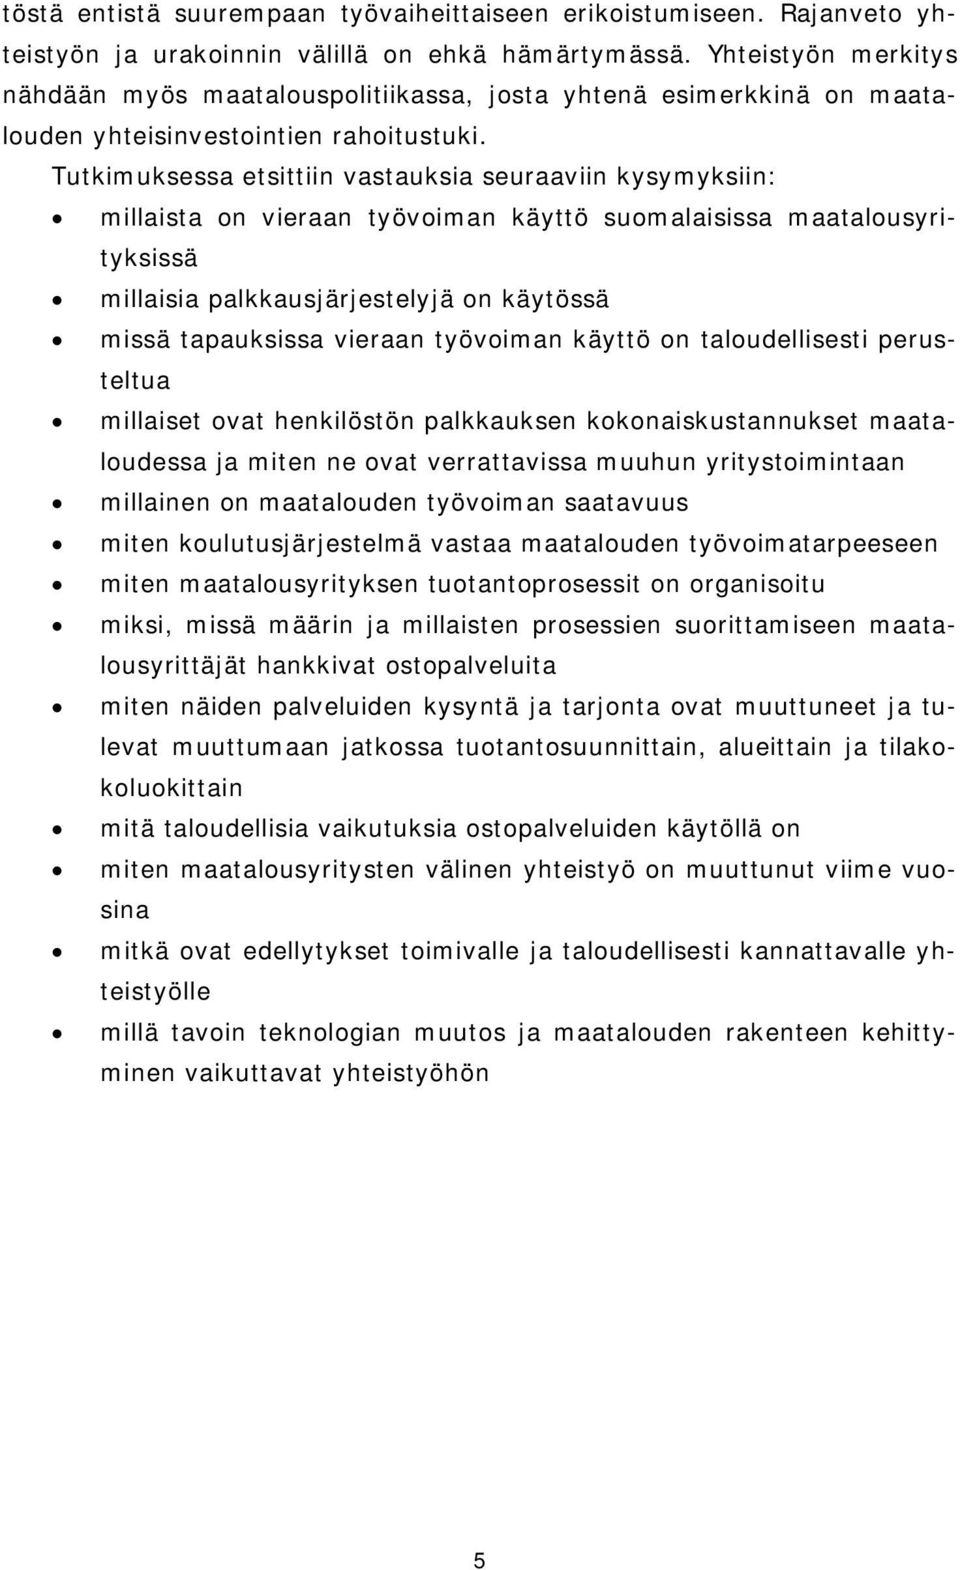 Tutkimuksessa etsittiin vastauksia seuraaviin kysymyksiin: millaista on vieraan työvoiman käyttö suomalaisissa maatalousyrityksissä millaisia palkkausjärjestelyjä on käytössä missä tapauksissa